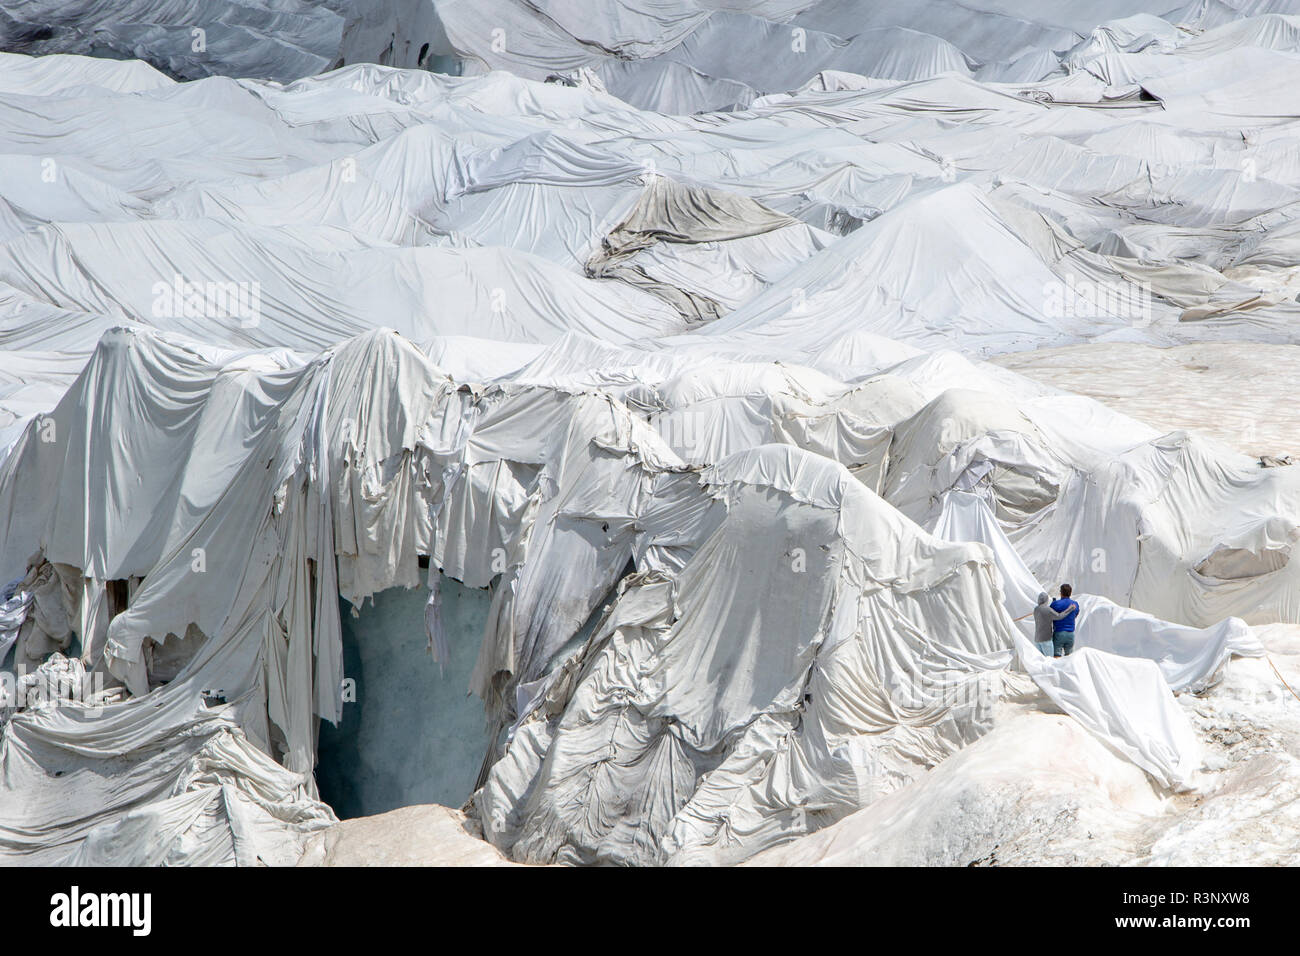 I turisti presso il ghiacciaio del Rodano in Svizzera. Dopo un inverno con un record di quantità di neve, la maggior parte di esso era andato quando questo imae è stata presa il 14 luglio 2018, esponendo il ghiaccio più scure. Mentre la neve è un brillante riflettore dell'energia dal sole, il ghiaccio più scura assorbe l'energia invece, accelerando la fusione del ghiacciaio. Il colore e le tenebre del ghiacciaio variano in tutto il mondo, a seconda dell'accumulo di inquinamento, età di ghiaccio, particelle prelevate dal ghiaccio e dai microrganismi nel ghiaccio. Il ghiacciaio è però raramente bianca come la neve. Con inverni brevi e vanishing snow cove Foto Stock